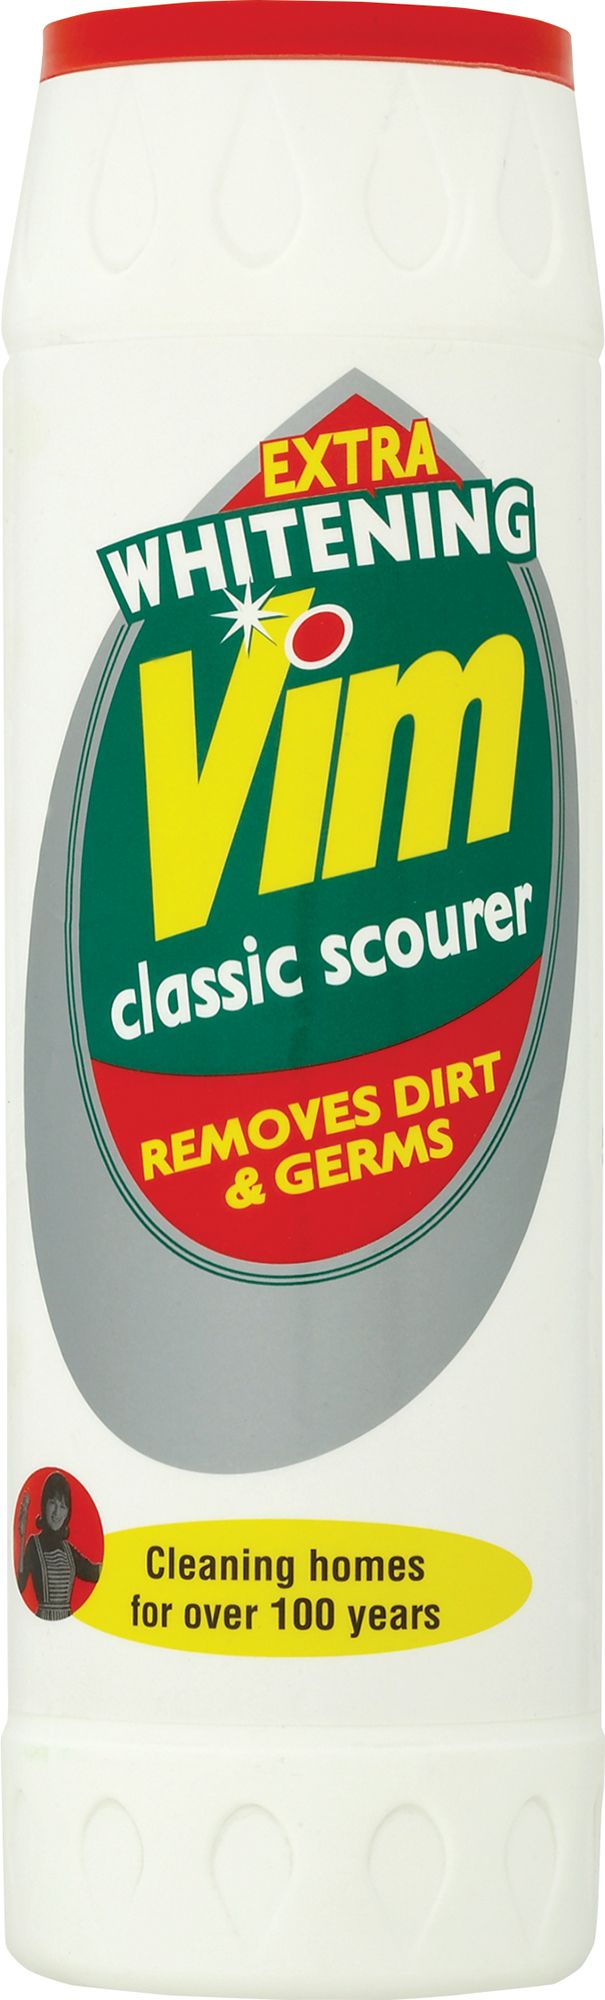 Vim Classic Cream Cleaner - 500ml